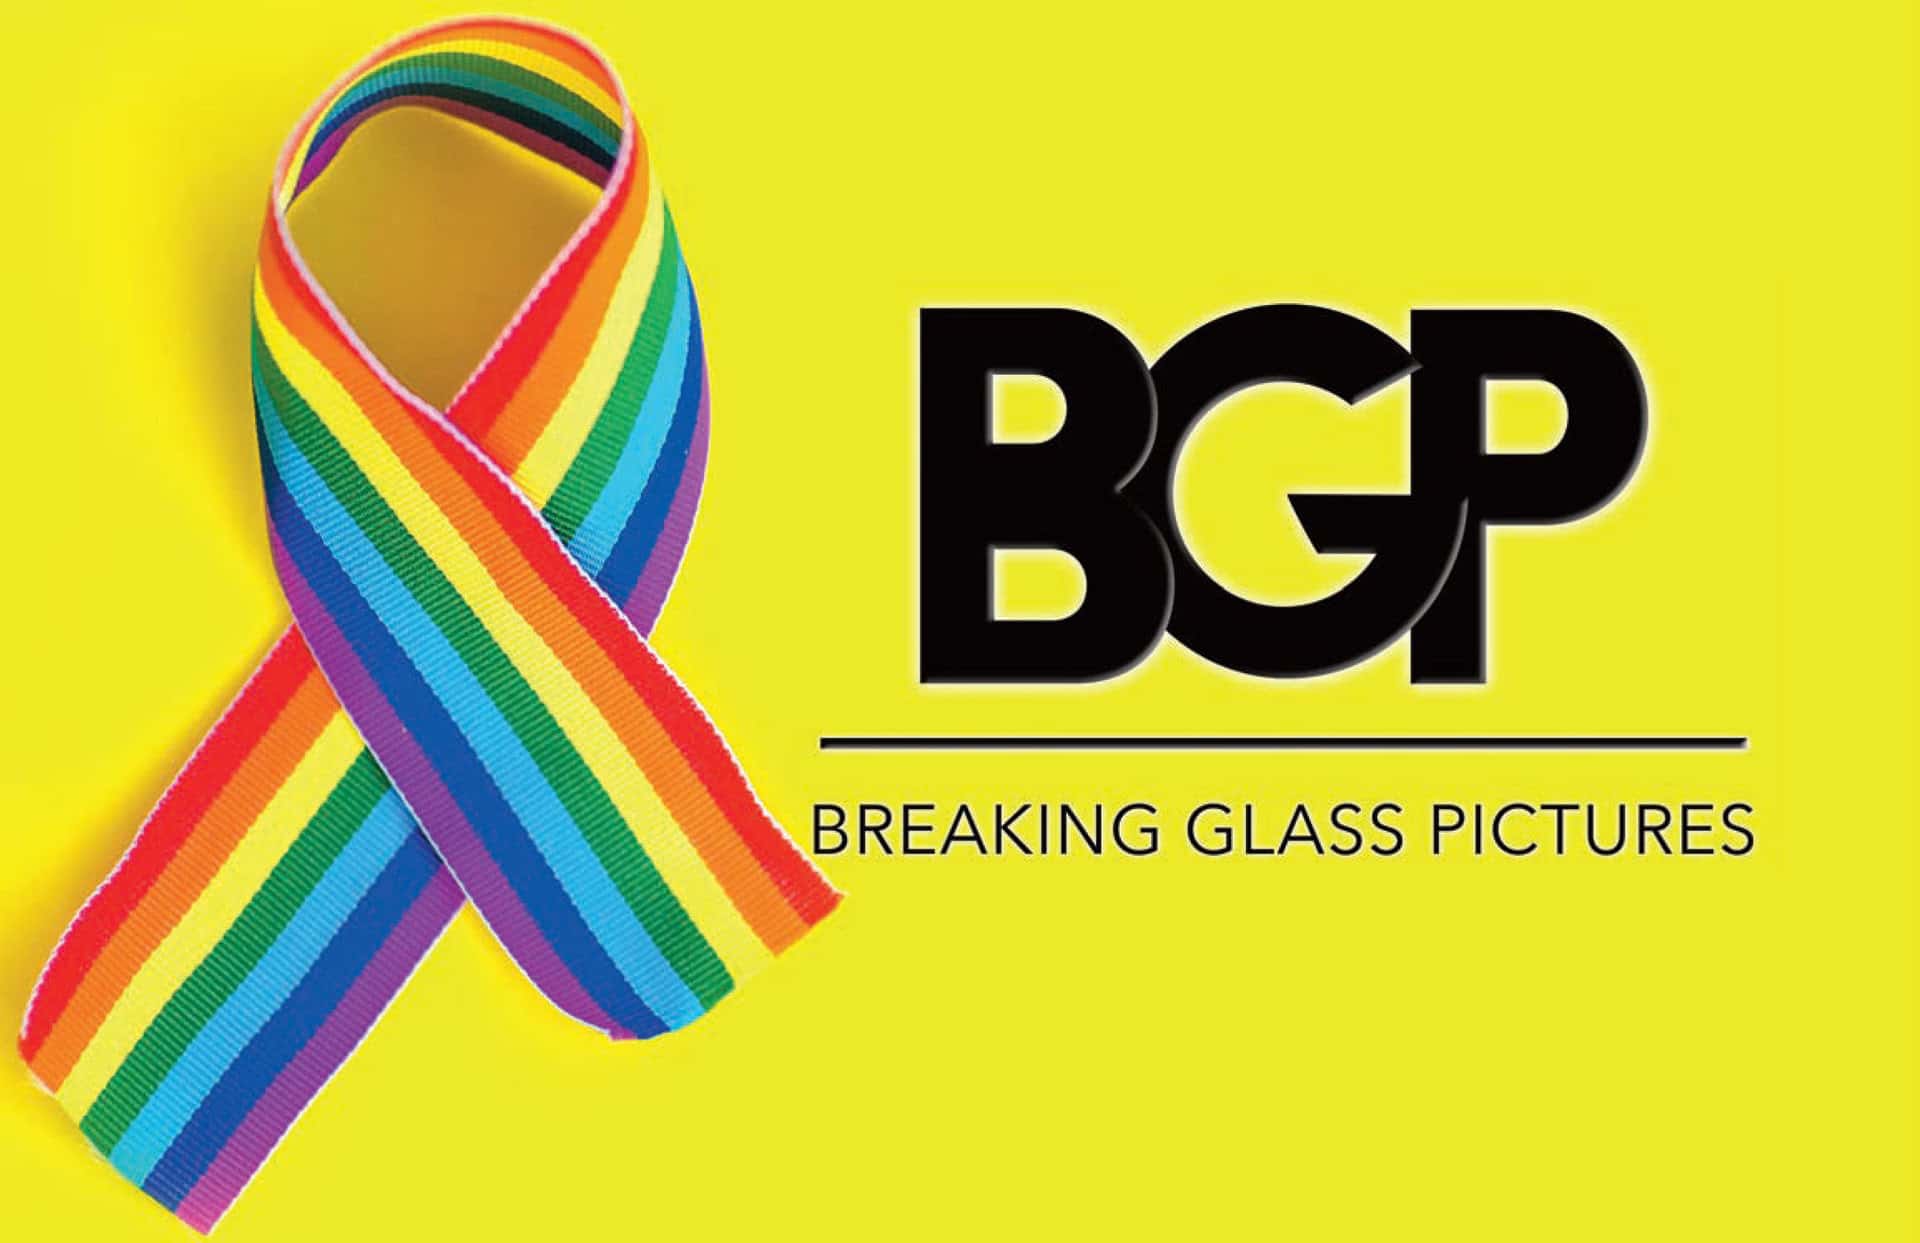 pride-bgp-logo